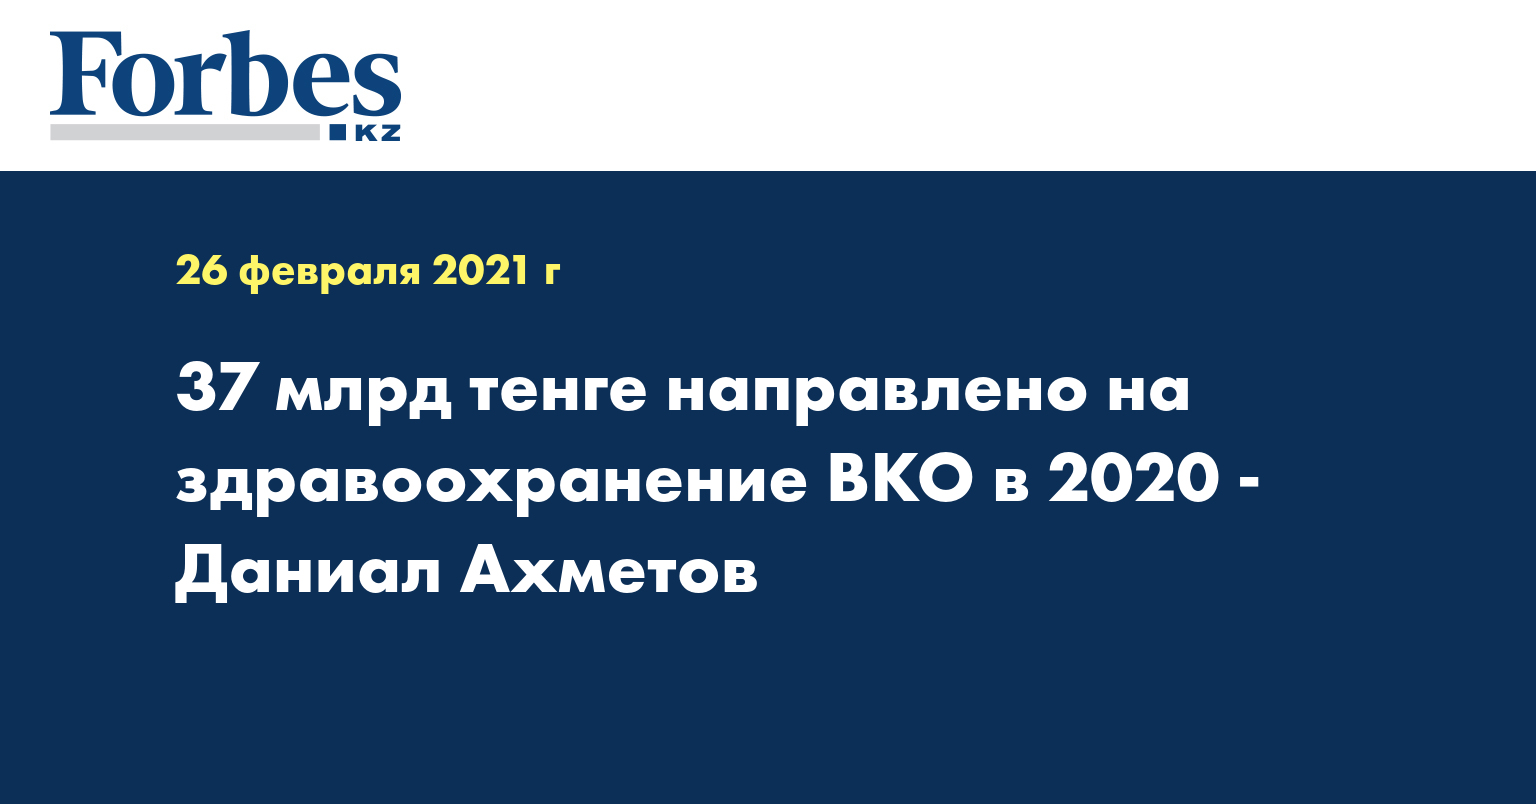 37 млрд тенге направлено на здравоохранение ВКО в 2020 - Даниал Ахметов